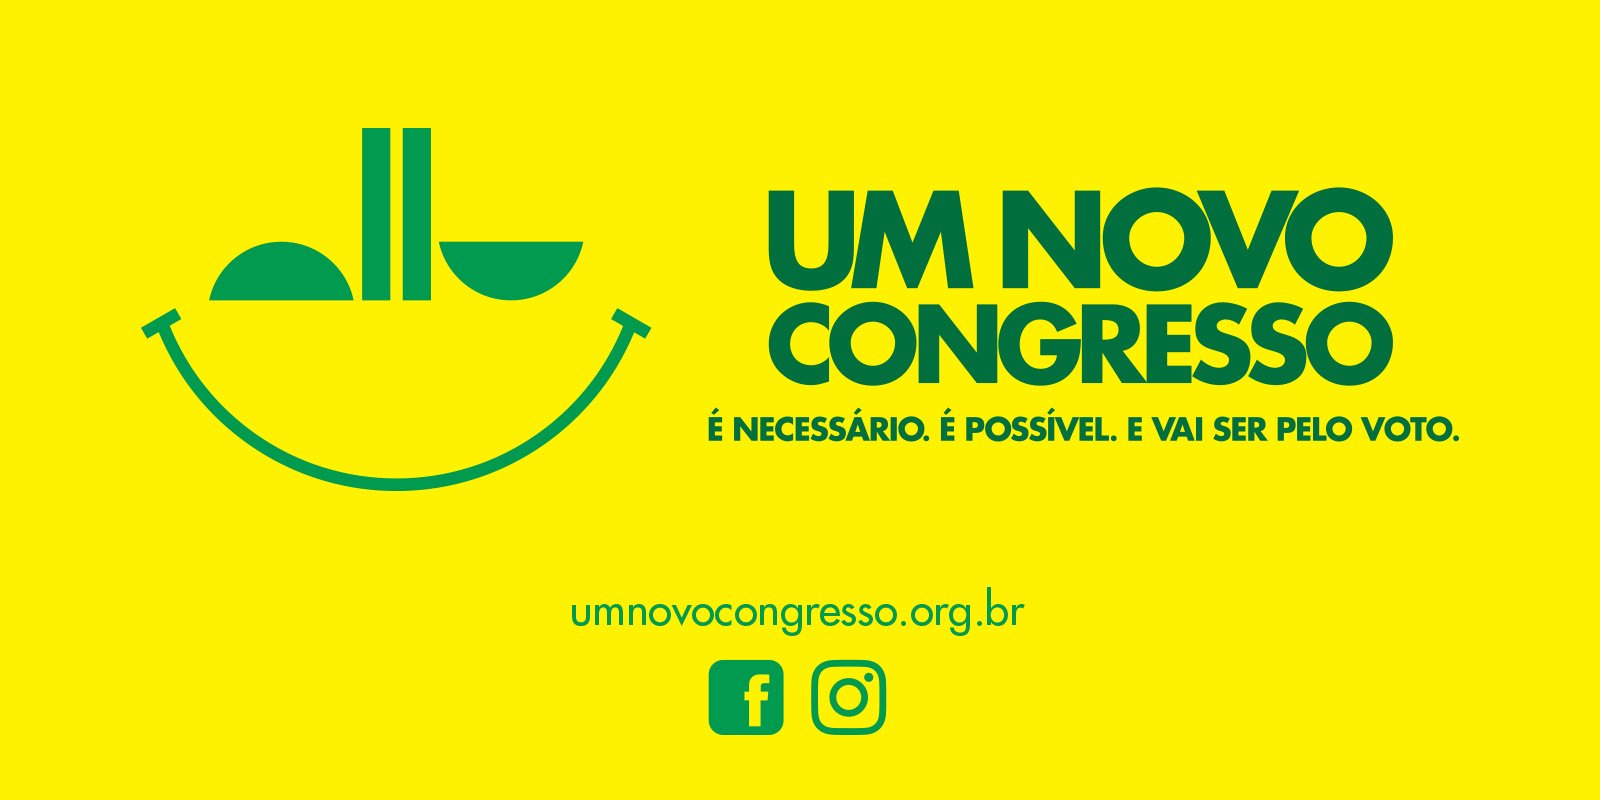 Featured image for “Um Novo Congresso”